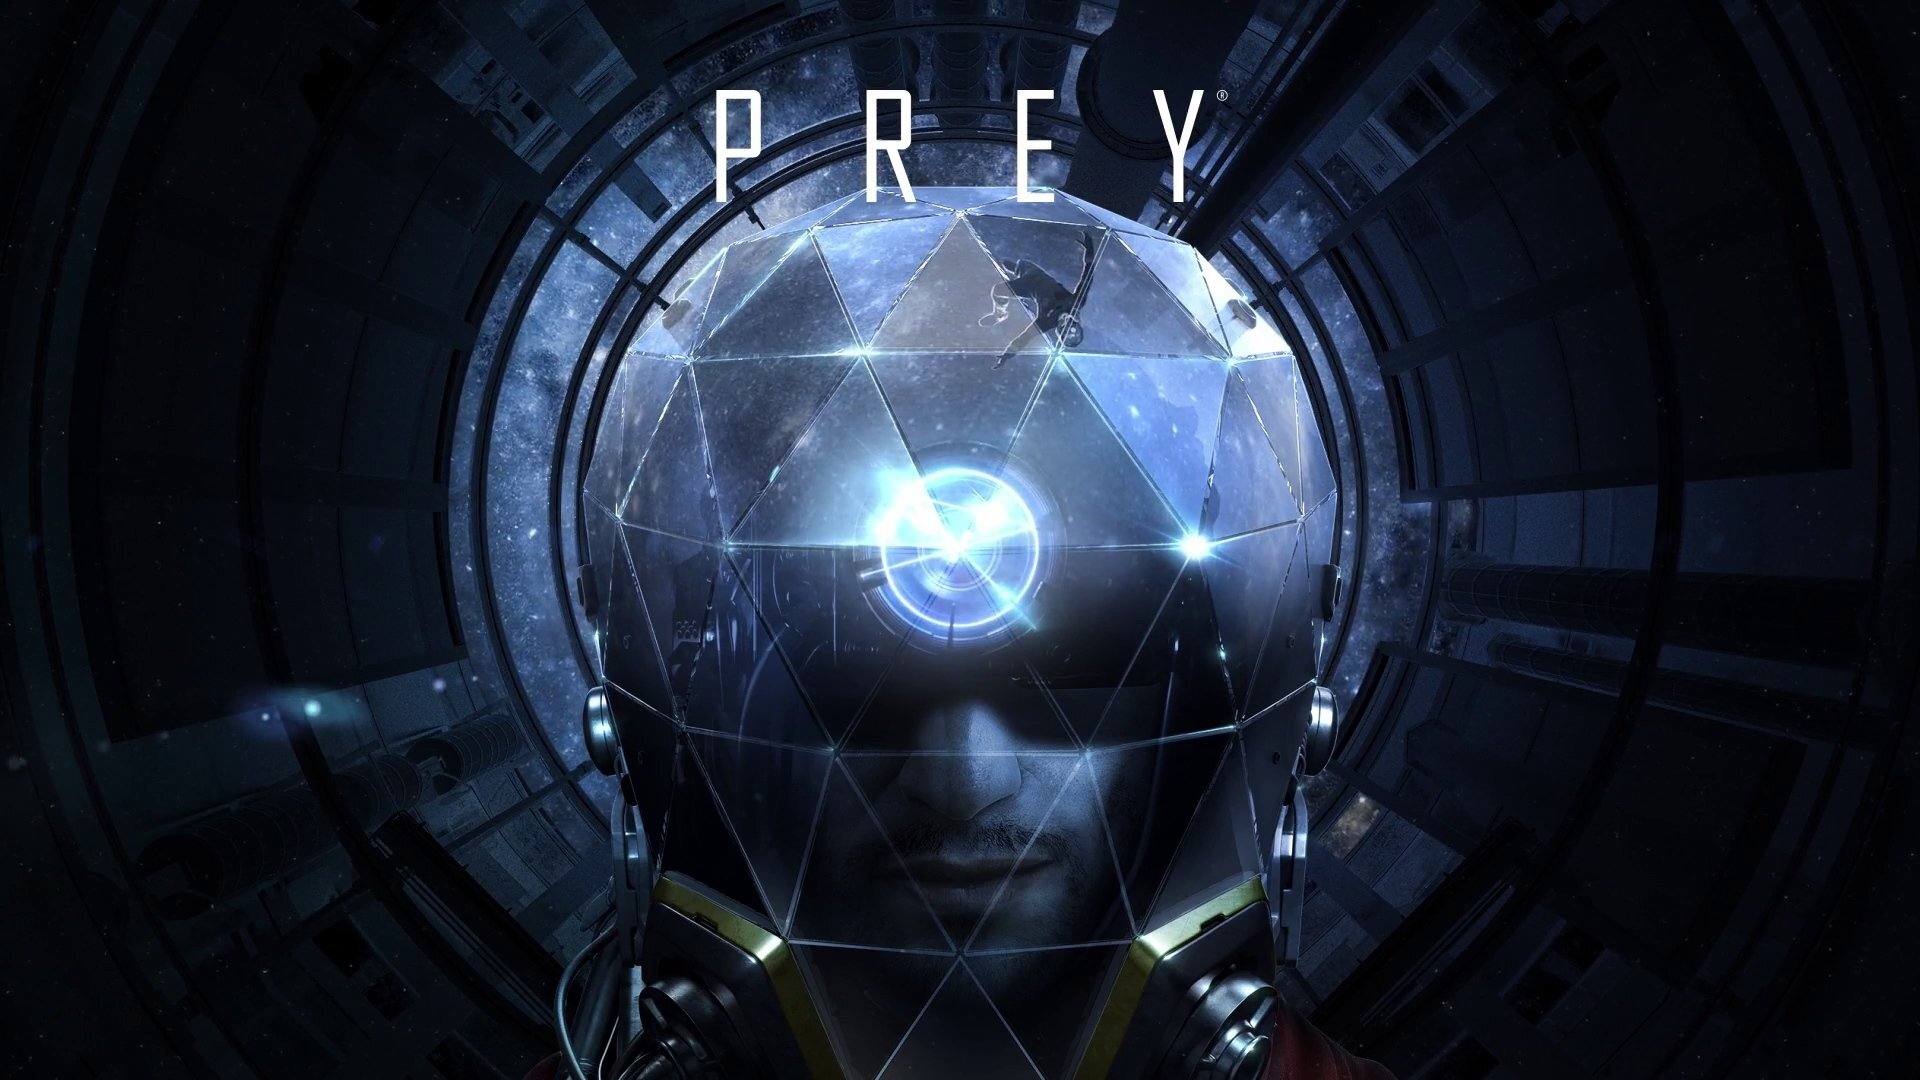 نام بازی Prey توسط کمپانی بتزدا به سازندگان تحمیل شده بود